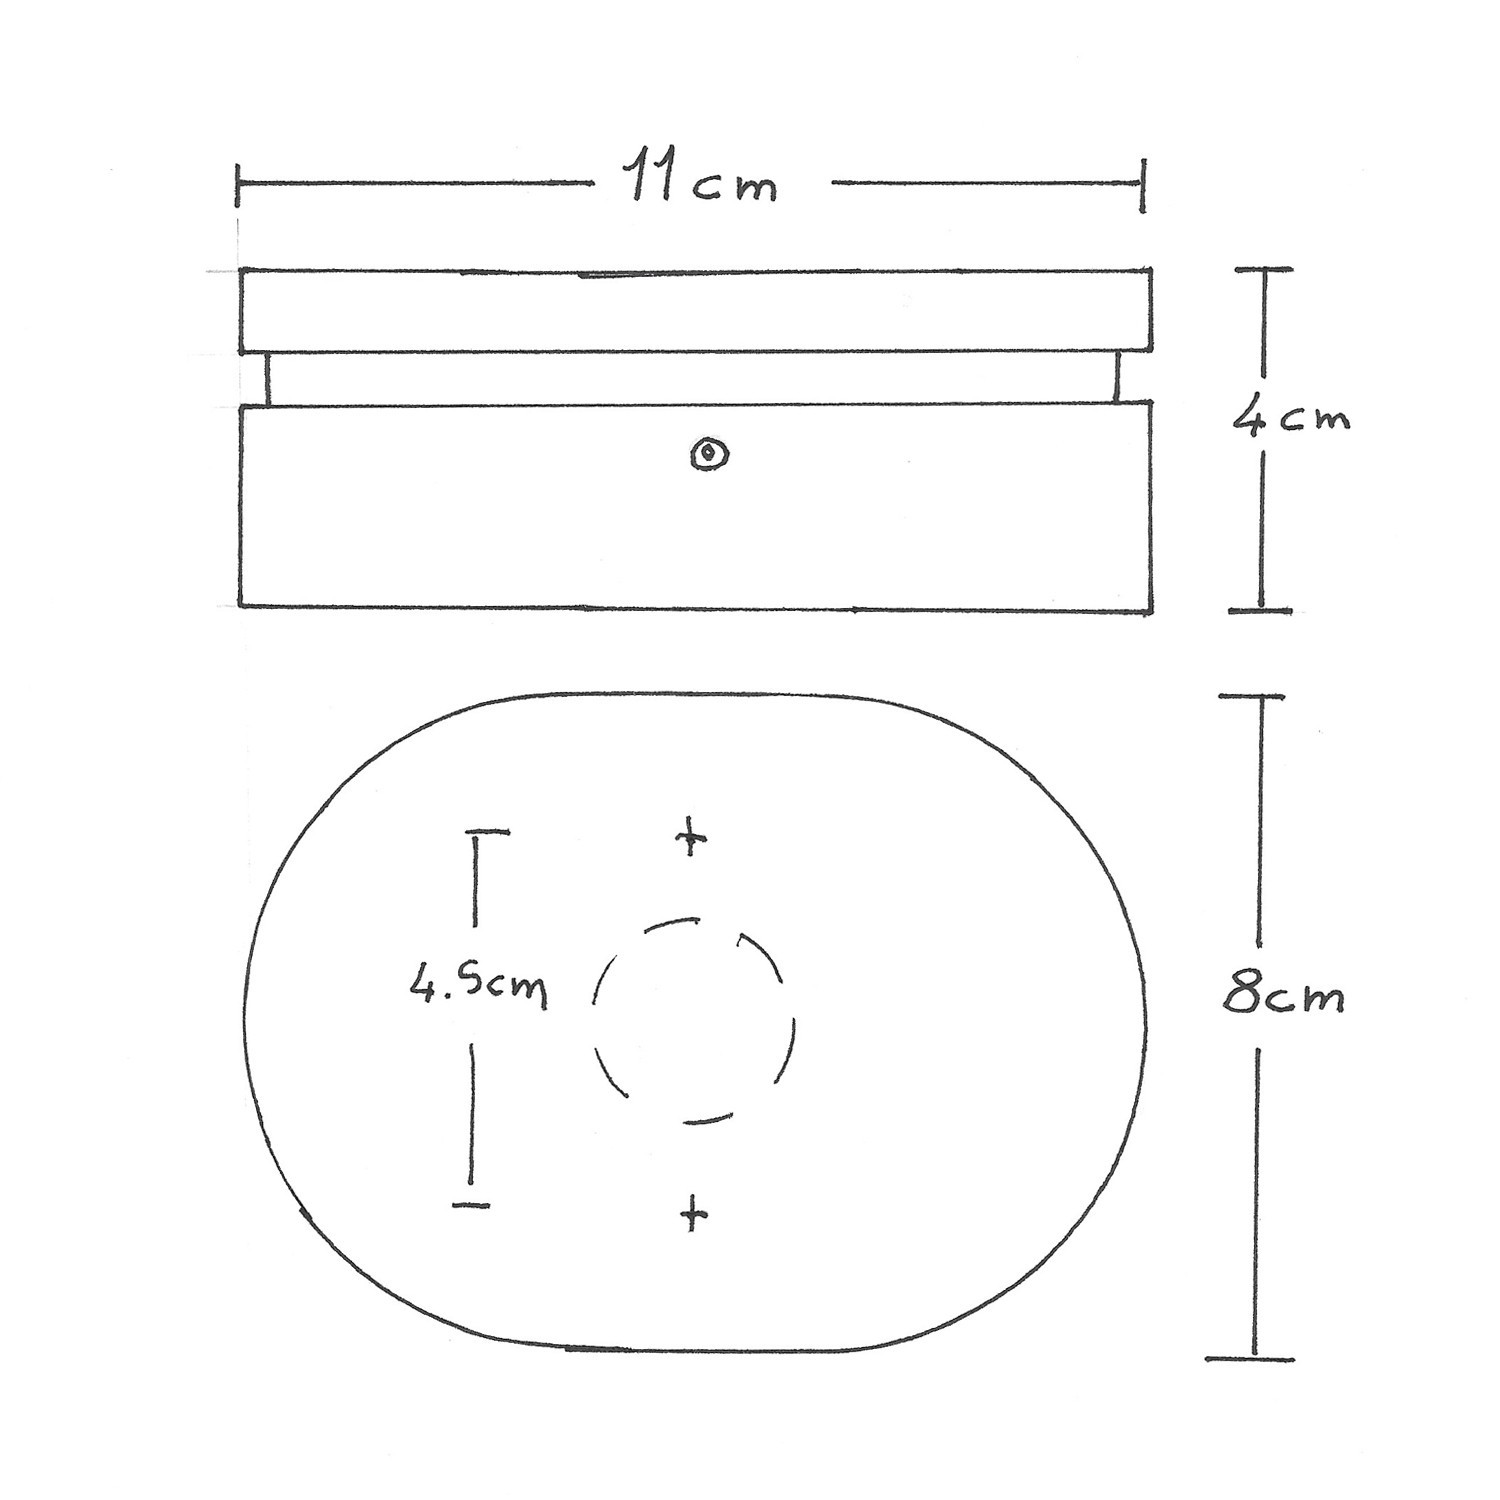 Oval vägg-/takkopp i trä med 2 sidohål för flatkablar och Filé-system. Tillverkad i Italien